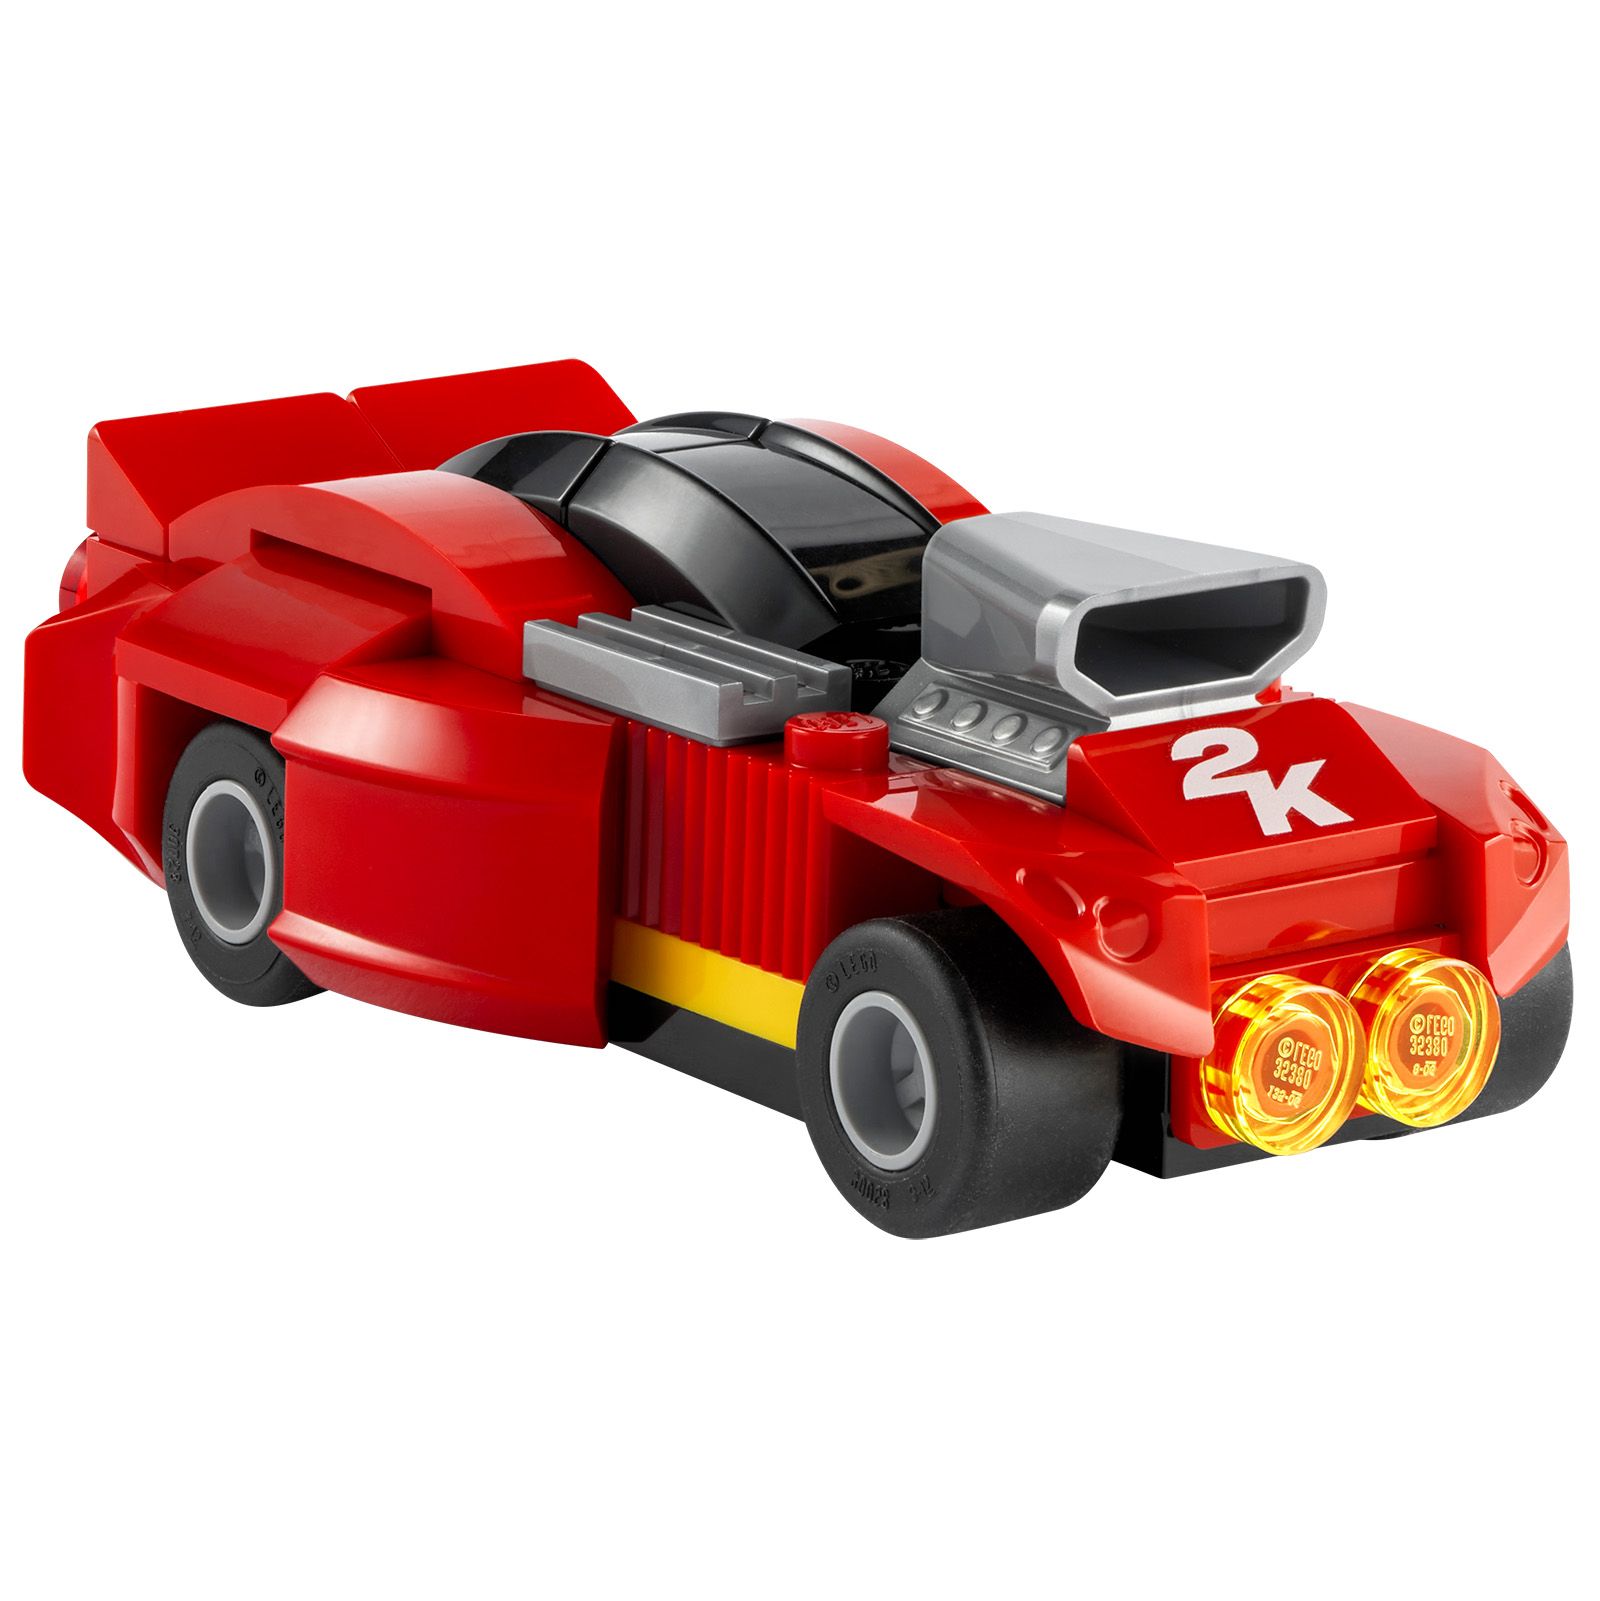 LEGO 2K Drive: priekaba ir LEGO produktas, siūlomas su tam tikromis fizinėmis vaizdo žaidimo versijomis